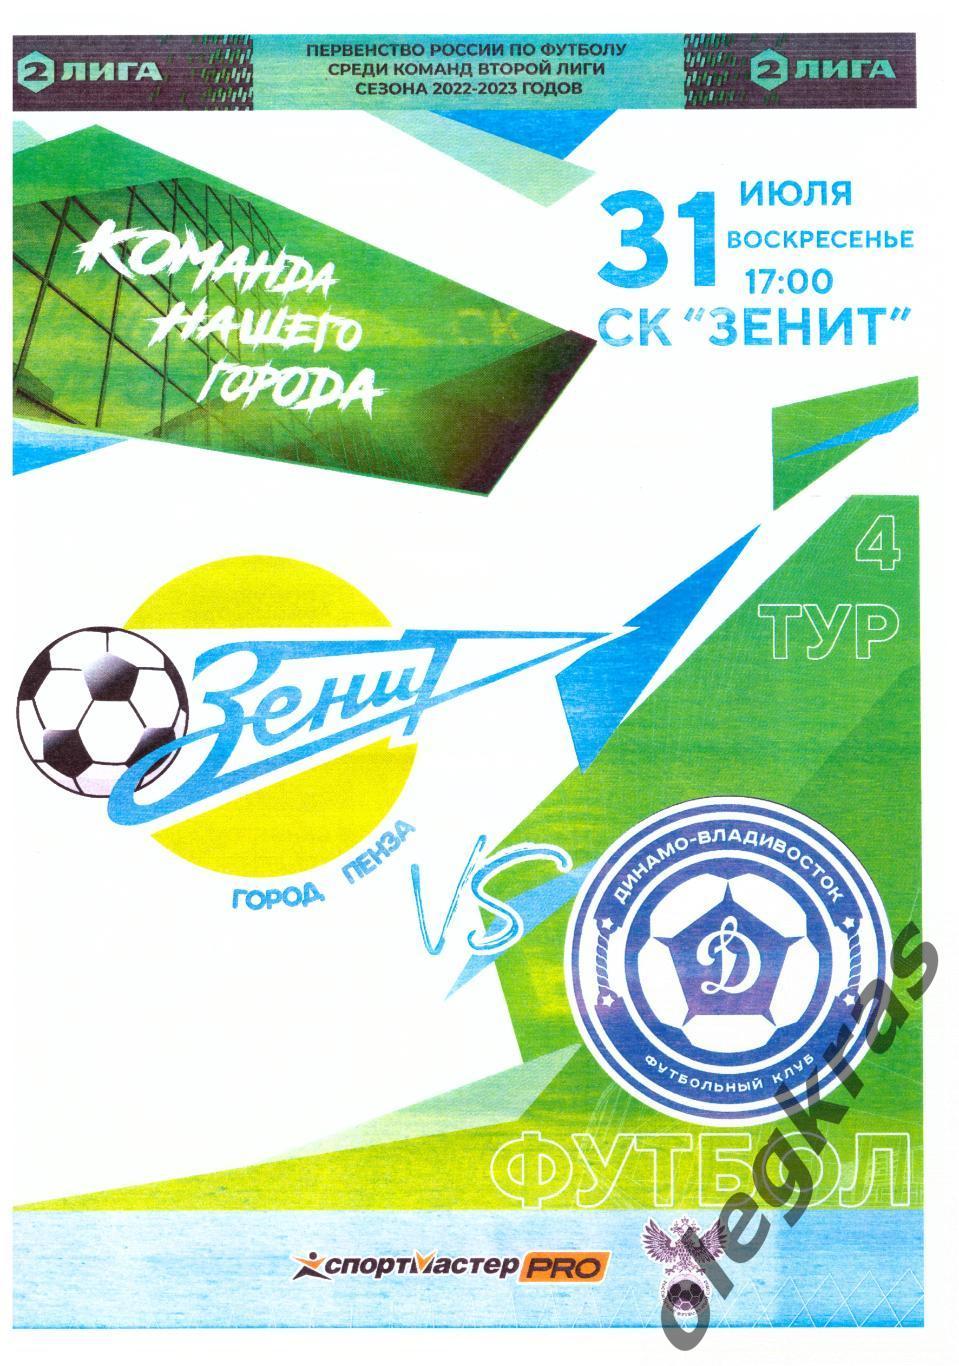 Зенит(Пенза) - Динамо - Владивосток(Владивосток) - 31 июля 2022 года.